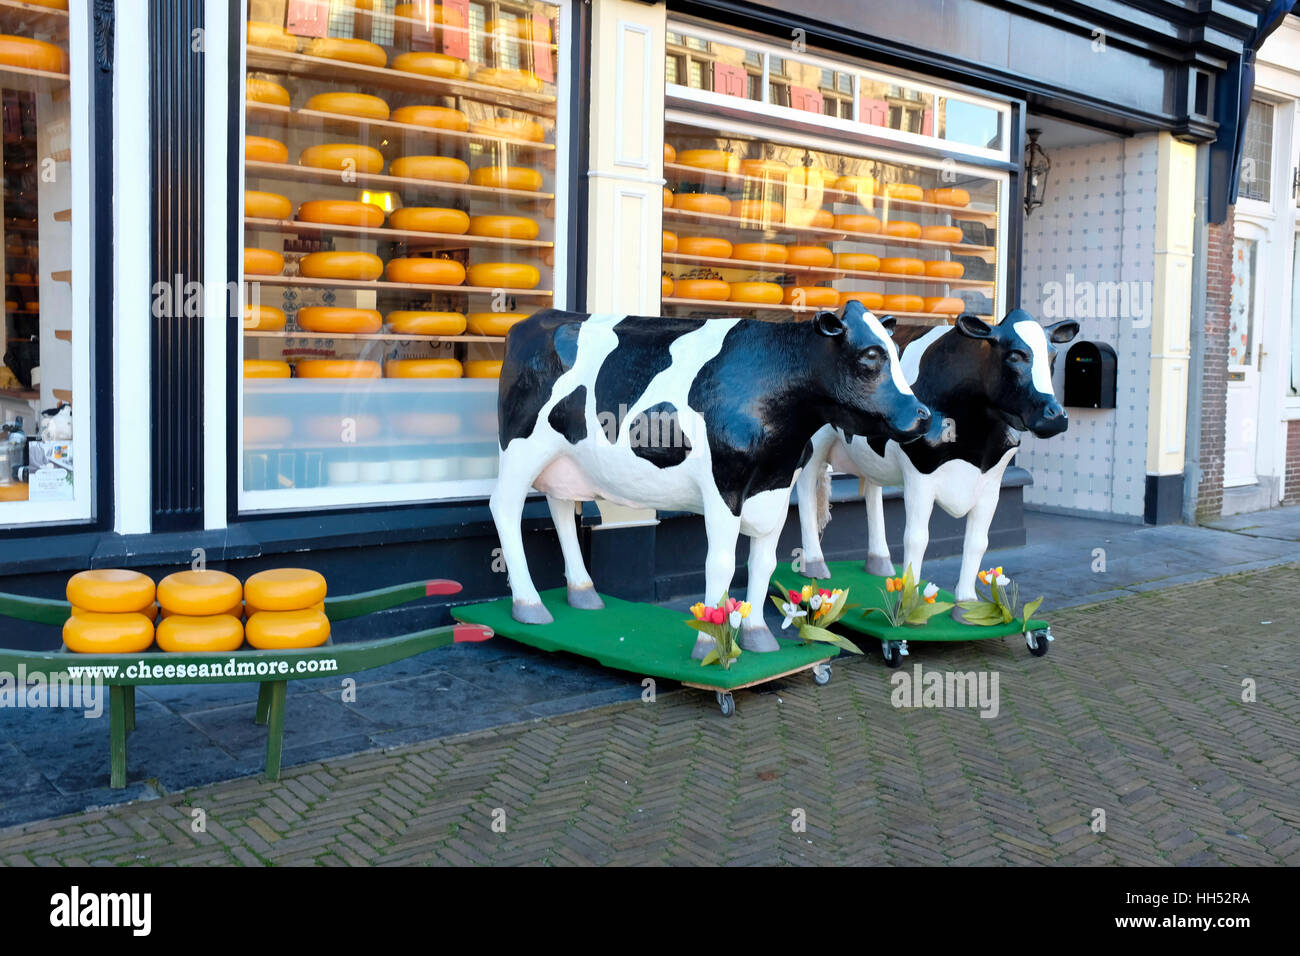 Formaggio olandese Shop, città di Delft, Paesi Bassi. Foto Stock